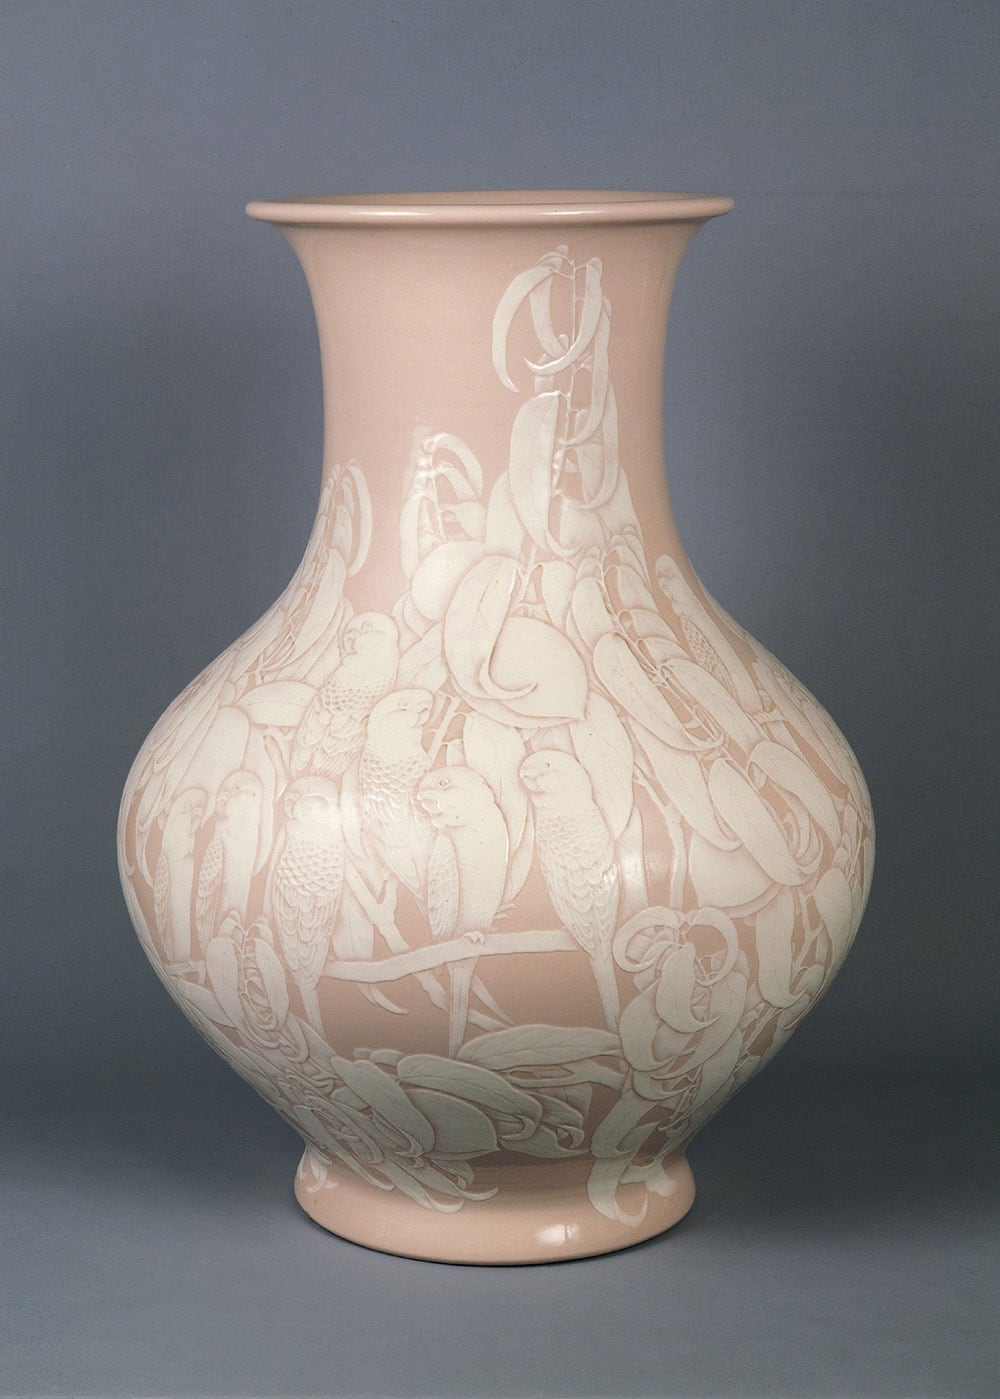 五代清水六兵衞《大礼磁仙果文花瓶》1926年。独自の技法「大礼磁」の代表的な作例。絵柄と技術が見事に融合。